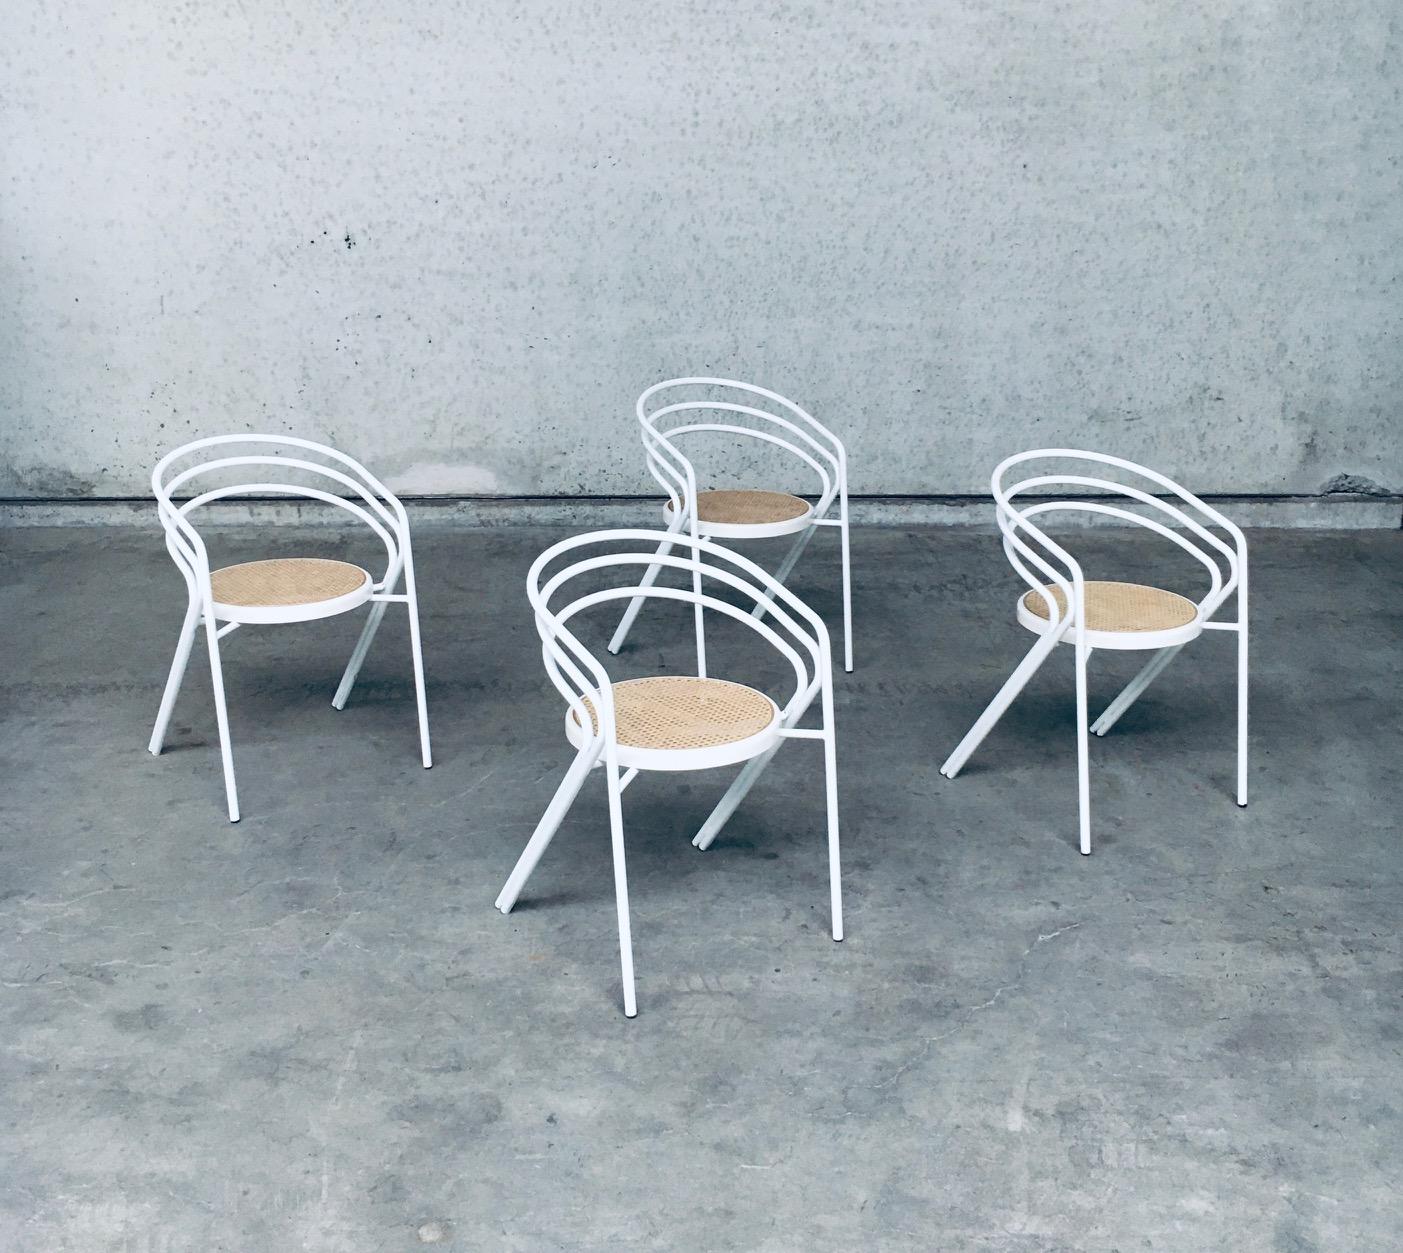 Ensemble de 4 chaises Vintage Design/One en métal blanc et sangles. Fabriquées en Italie, années 1970. Pas de marque de fabrique sur ces merveilleuses chaises de cuisine, de salle à manger ou d'appoint, aérées et bien conçues. Cadre en métal